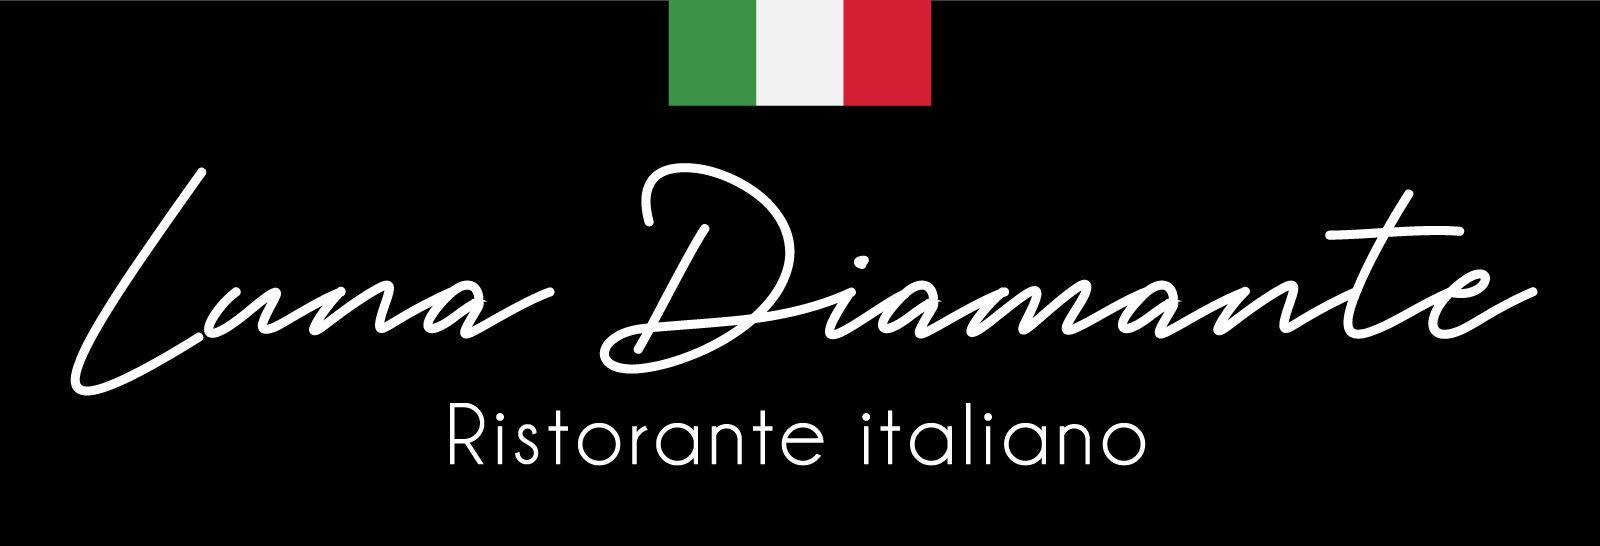 Luna Diamante Italian Restaurant | in Sao Rafael, Albufeira, Gale, Guia, Sesmarias, Vale de parra 